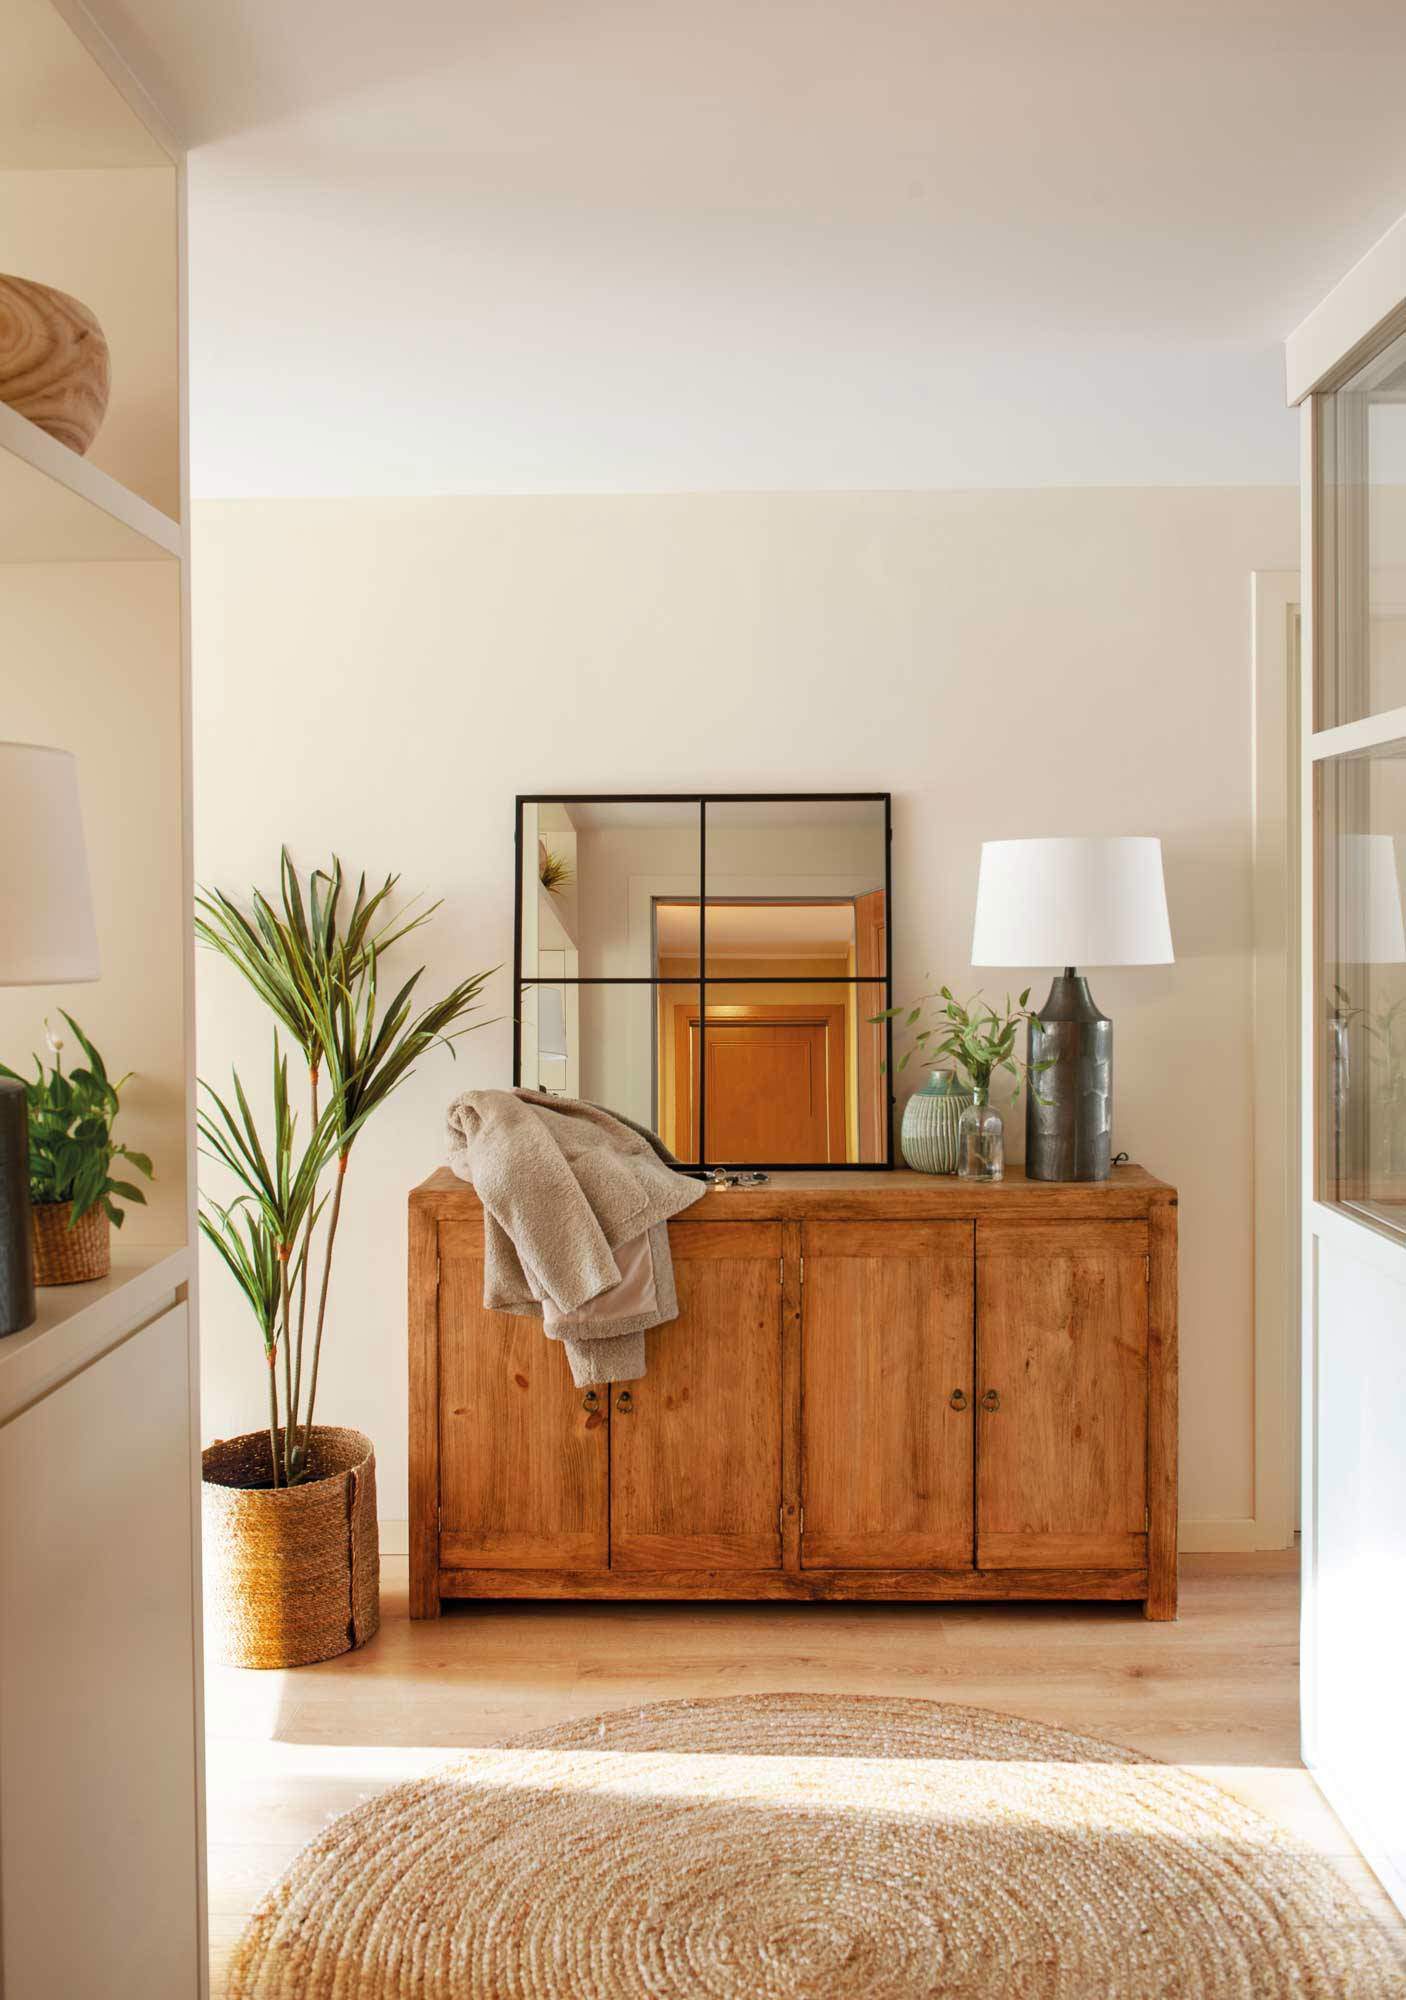 Recibidor con aparador de estilo tradicional de madera, espejo de ventana, y alfombra redonda de ratán.